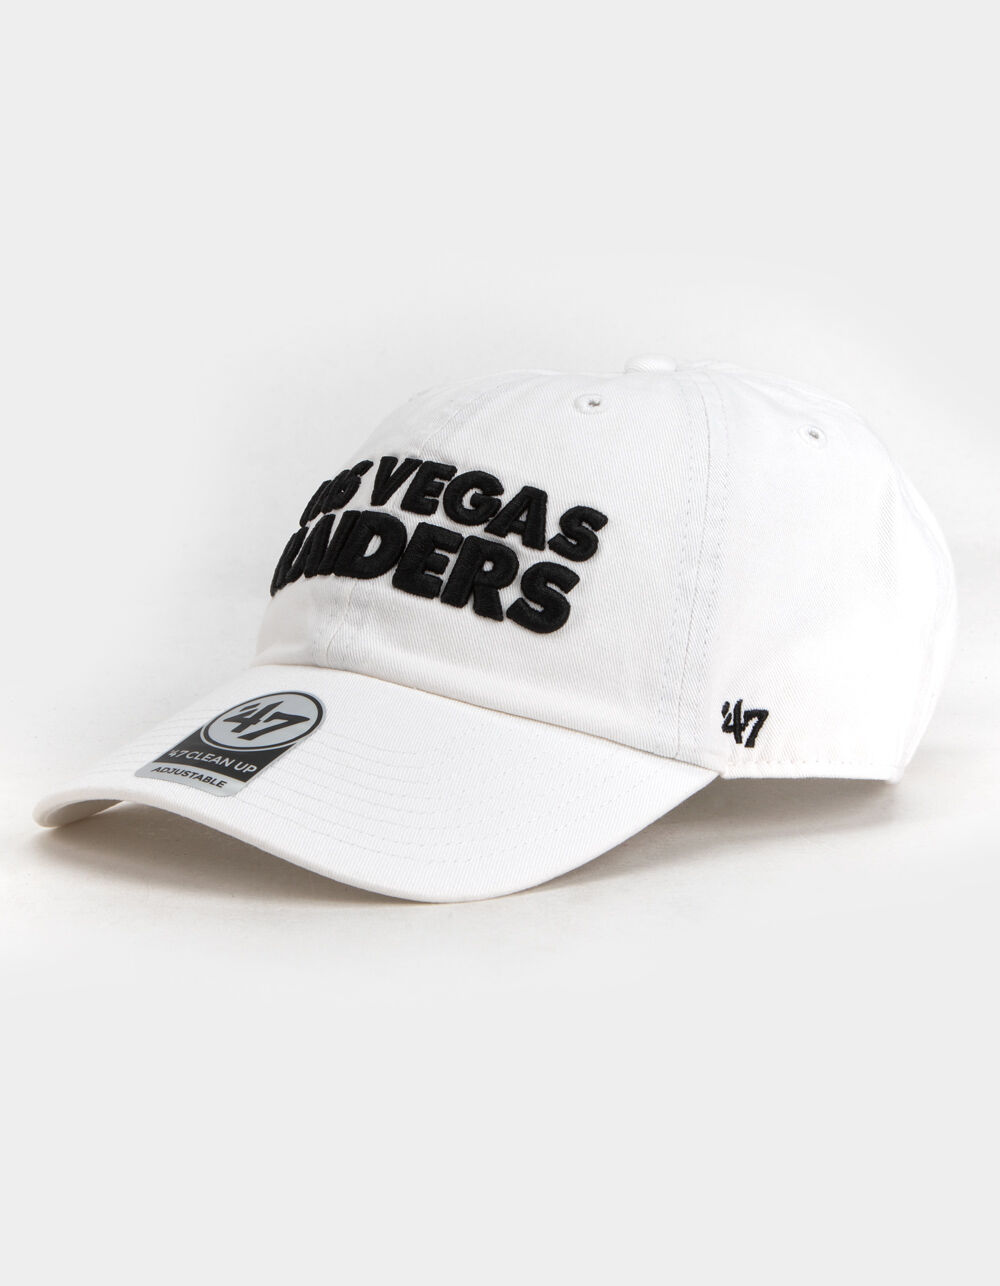 47 Brand Las Vegas Raiders Cap Hat 